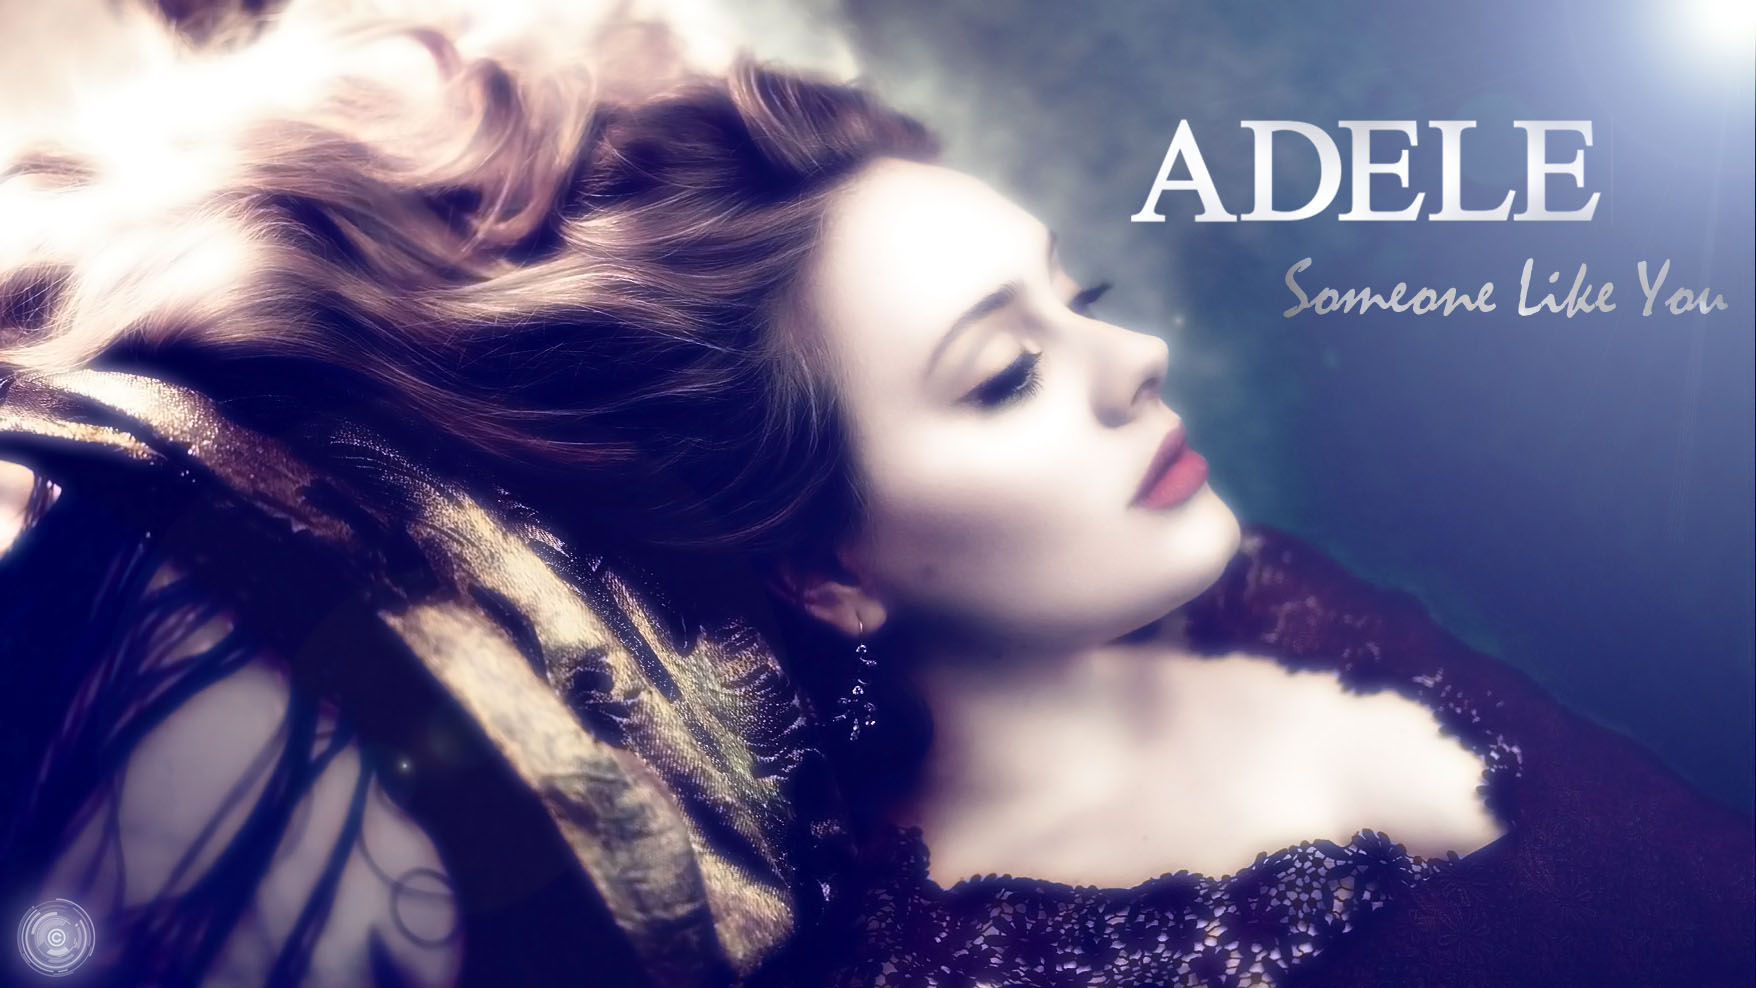 Someone Like You - Adele by BaptisteWSF on DeviantArt1756 x 988